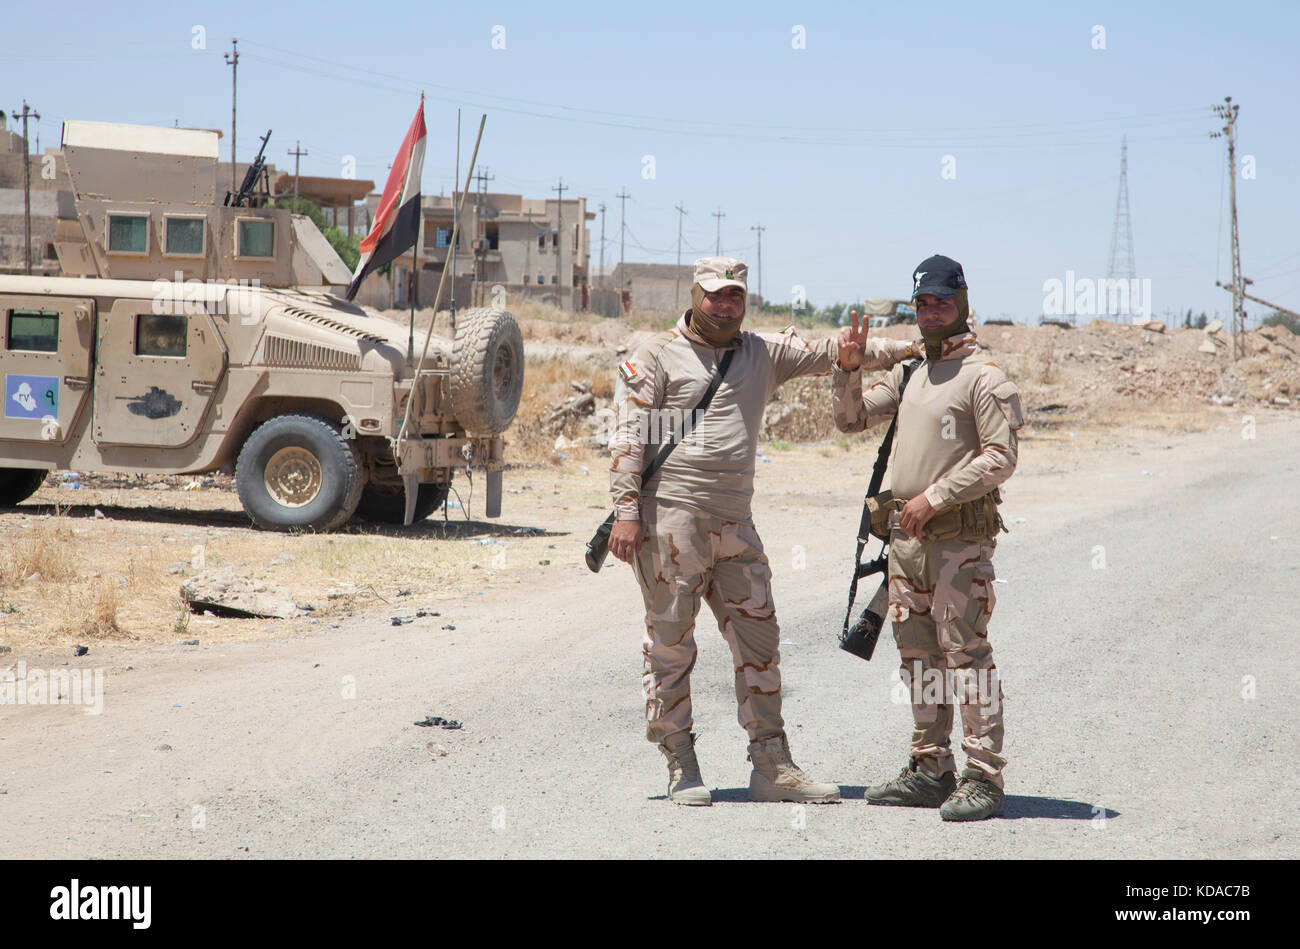 Soldados del ejército iraquí saludar a un convoy de soldados de EE.UU. Mayo 25, 2017 en Mosul, Iraq. Ha habido un esfuerzo combinado entre las fuerzas estadounidenses e iraquíes en la zona para derrotar a los extremistas de Isis. Foto de stock